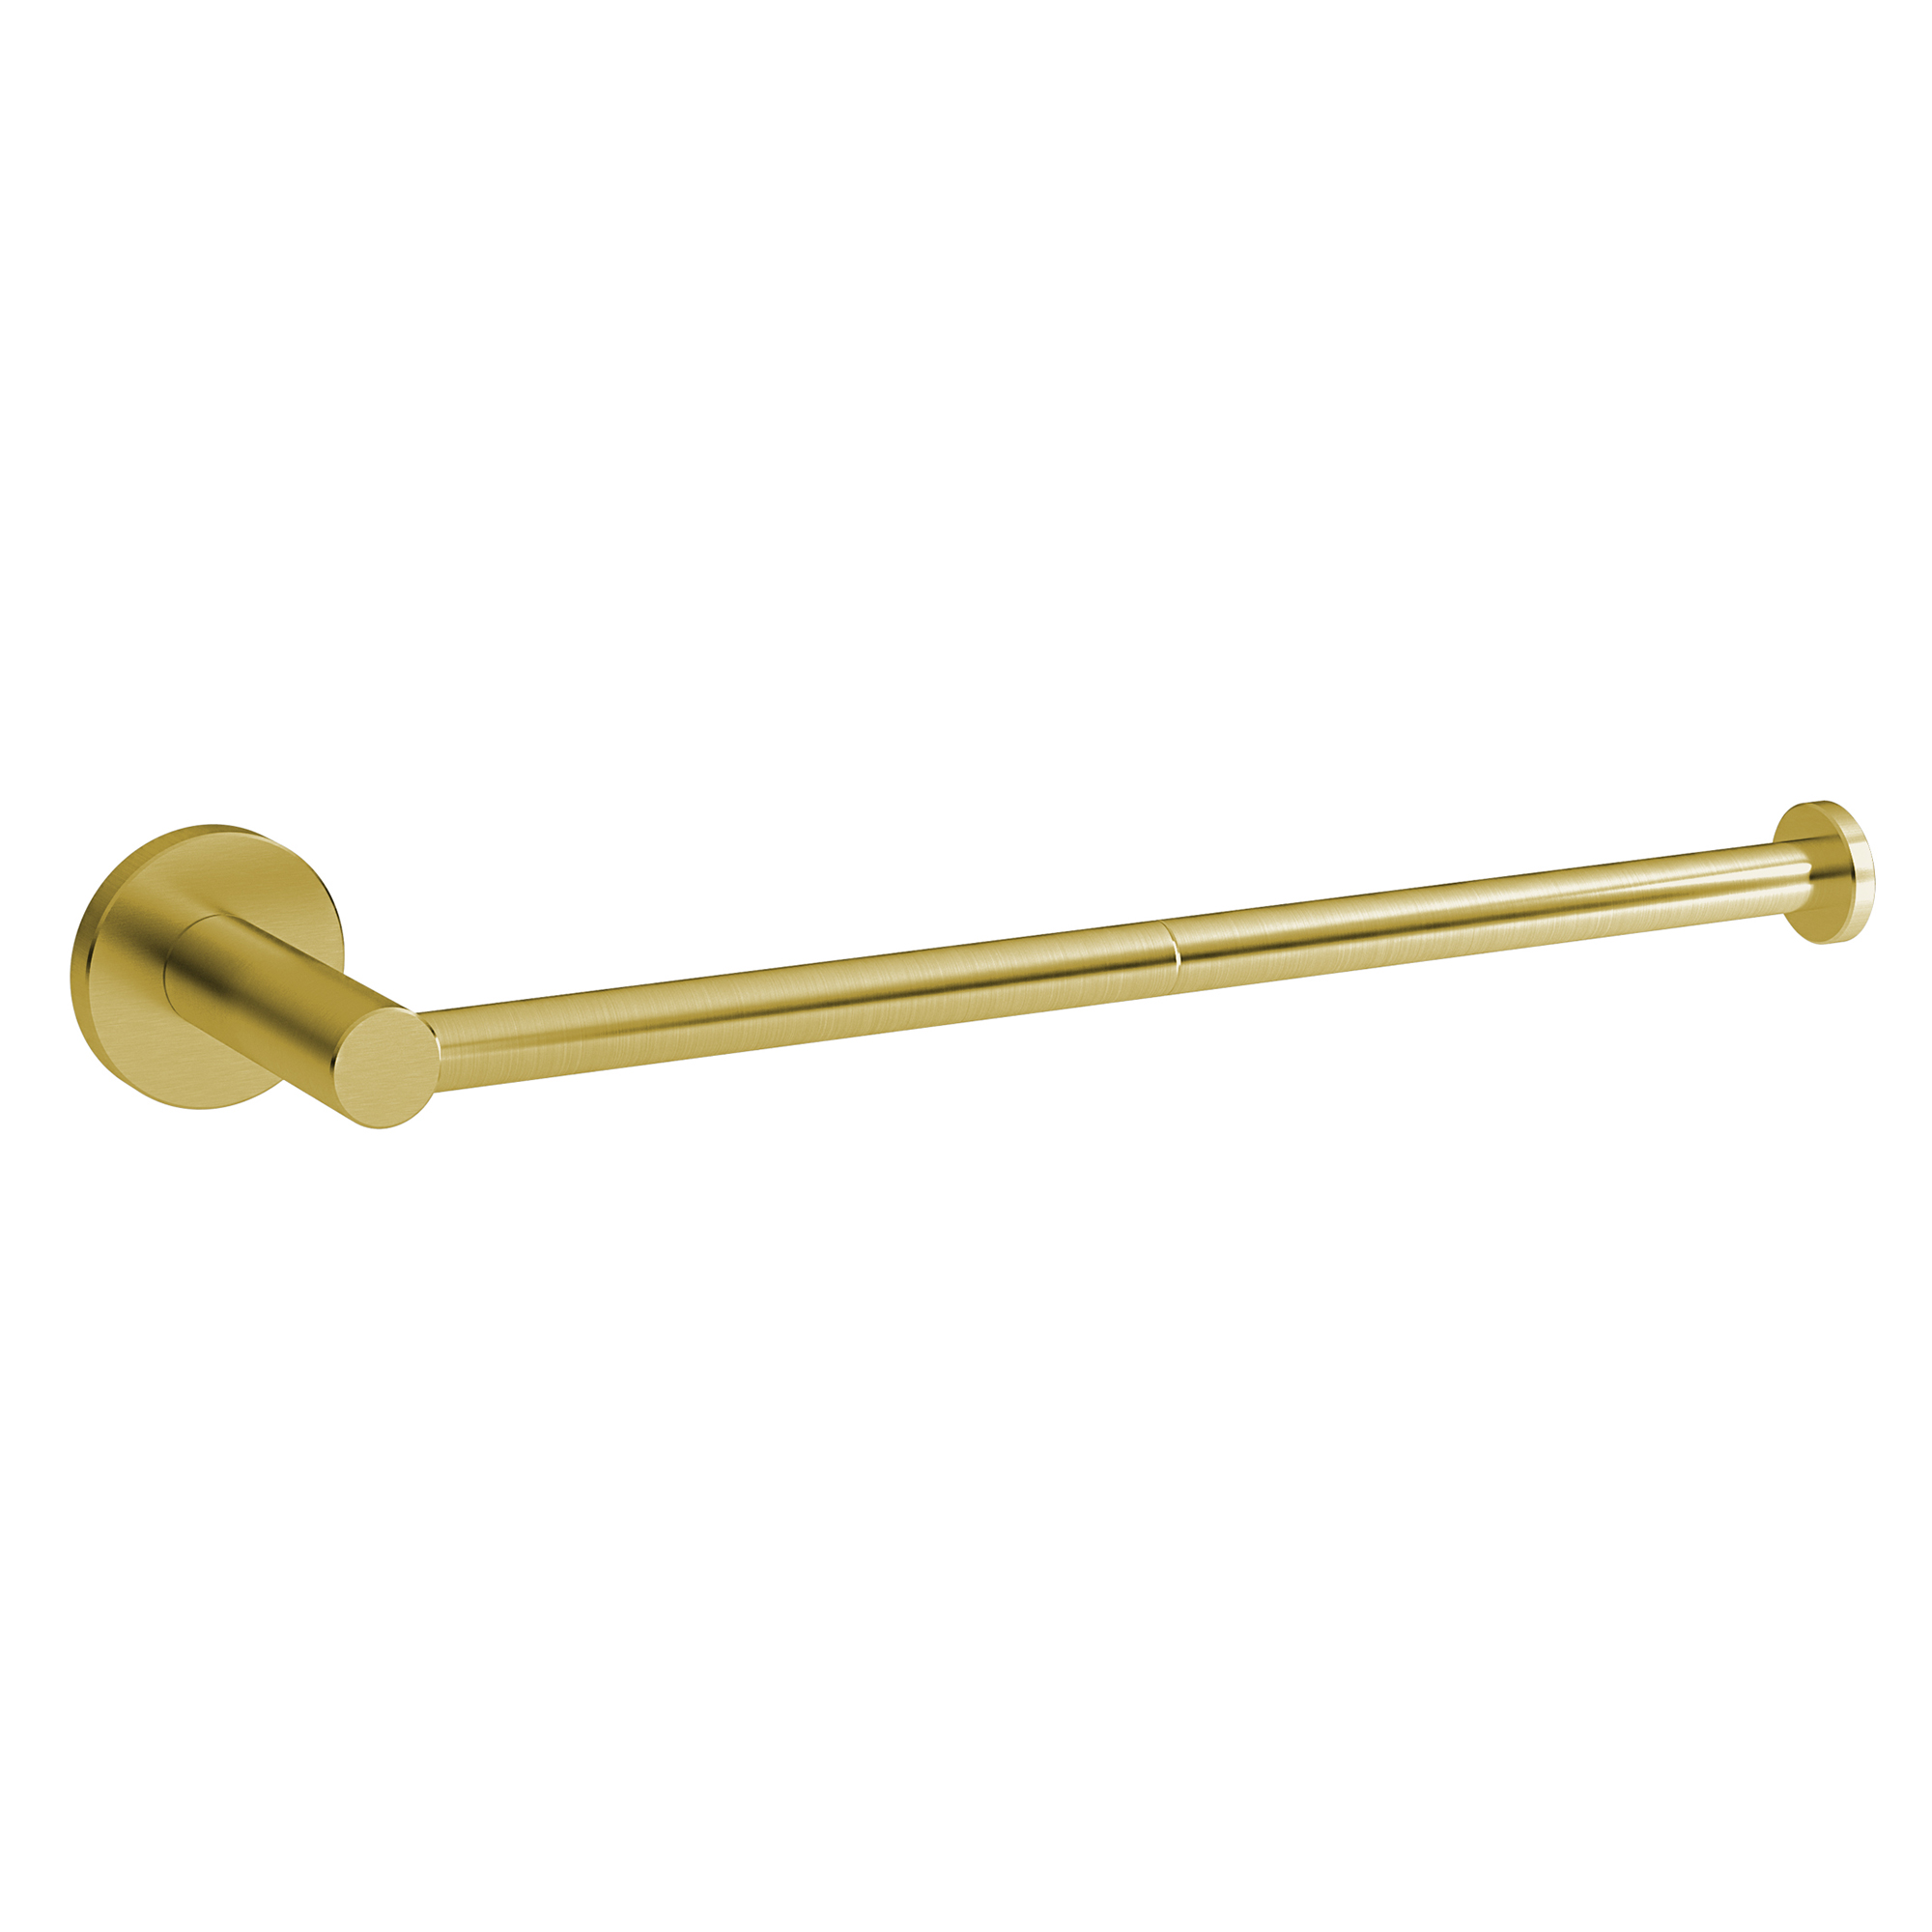 Κρεμάστρα Πετσέτας Ανοξείδωτη Brushed Brass Pam & Co 29x5x5εκ. 115-023 (Υλικό: Ανοξείδωτο) – Pam & Co – 115-023